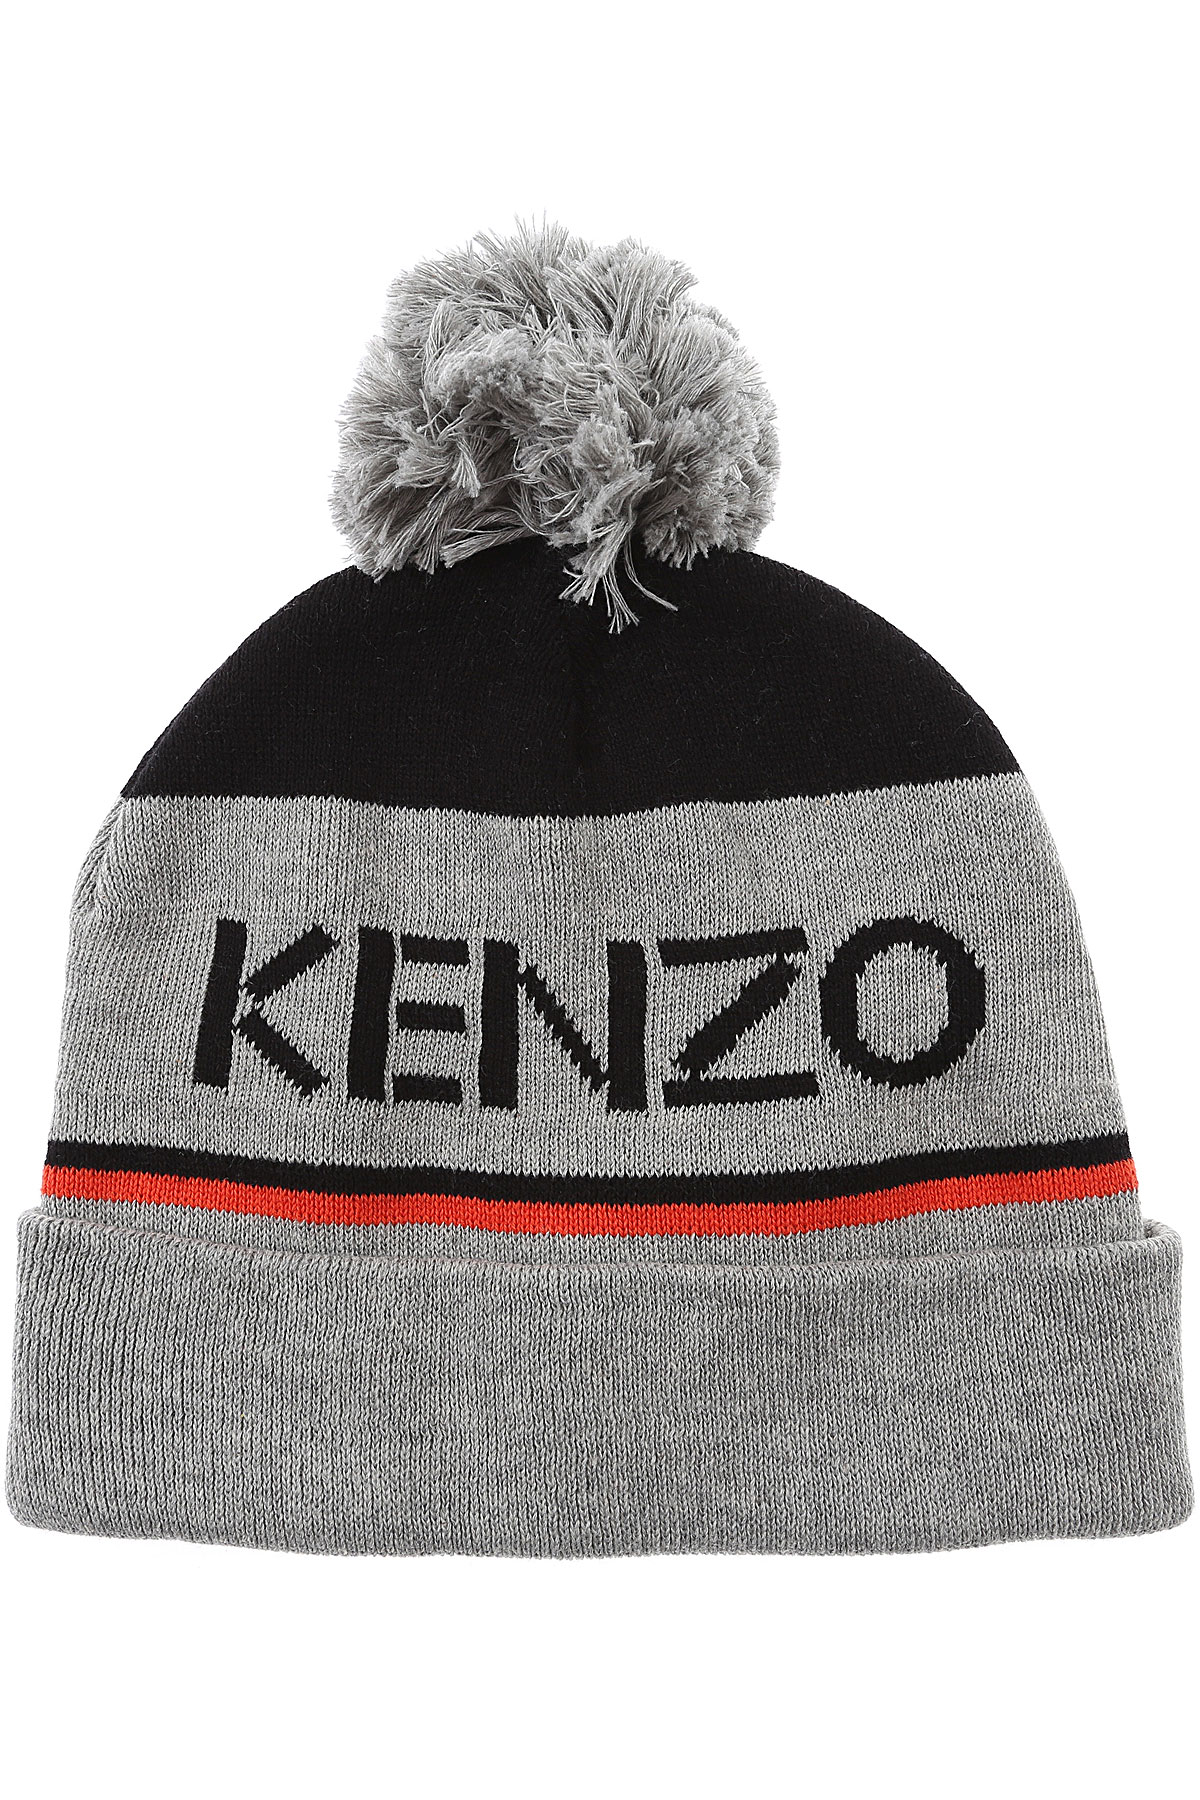 Kenzo Kinder Hut für Jungen Günstig im Sale, Grau, Baumwolle, 2017, 10-14 Y 5-8 Y 2-4 Y